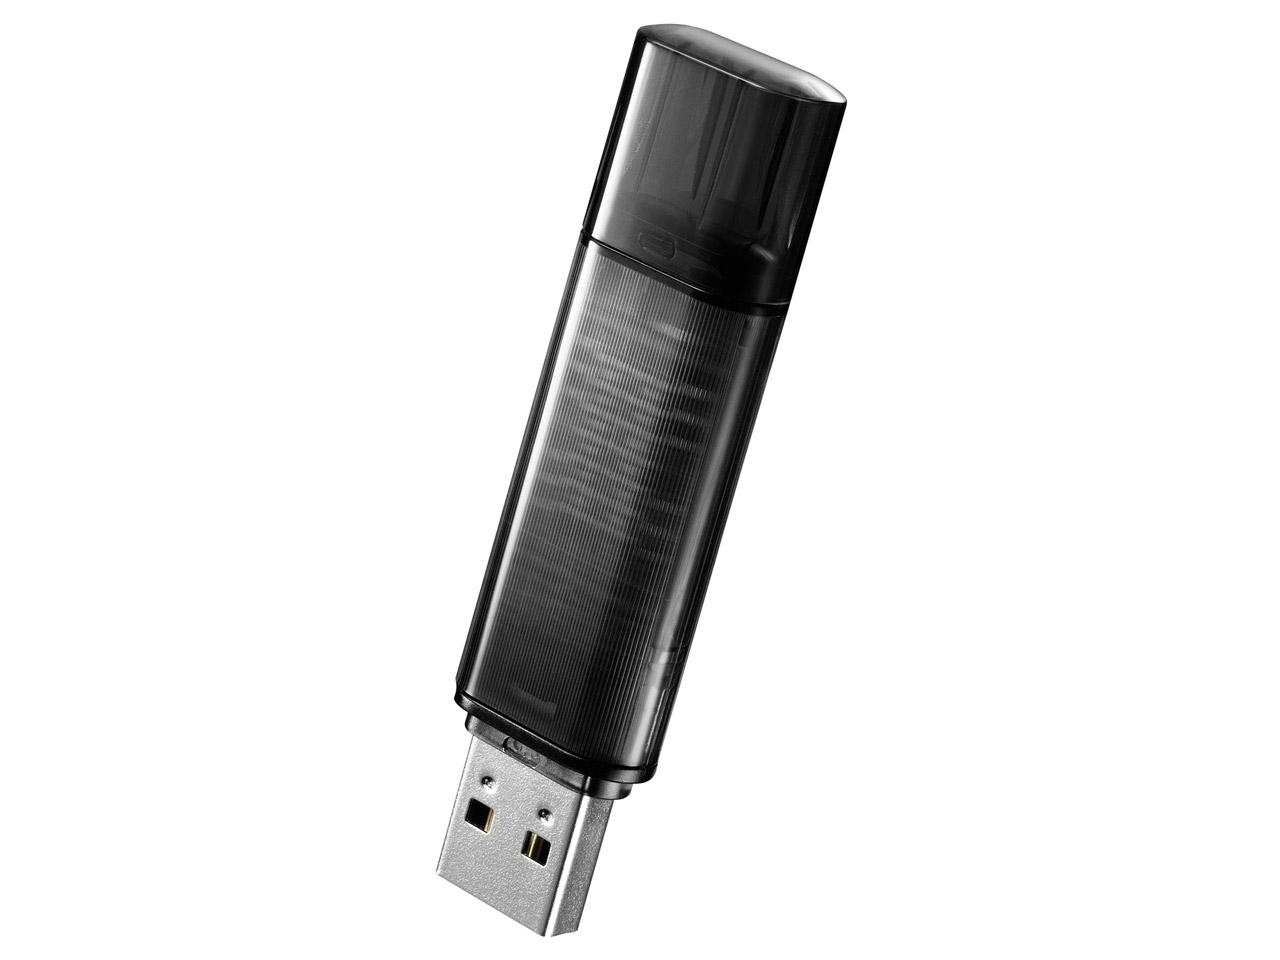 USB 3.1 Gen 1Ή ZLeBUSB[ @l 16GB ubN(EU3-ST/16GRK)